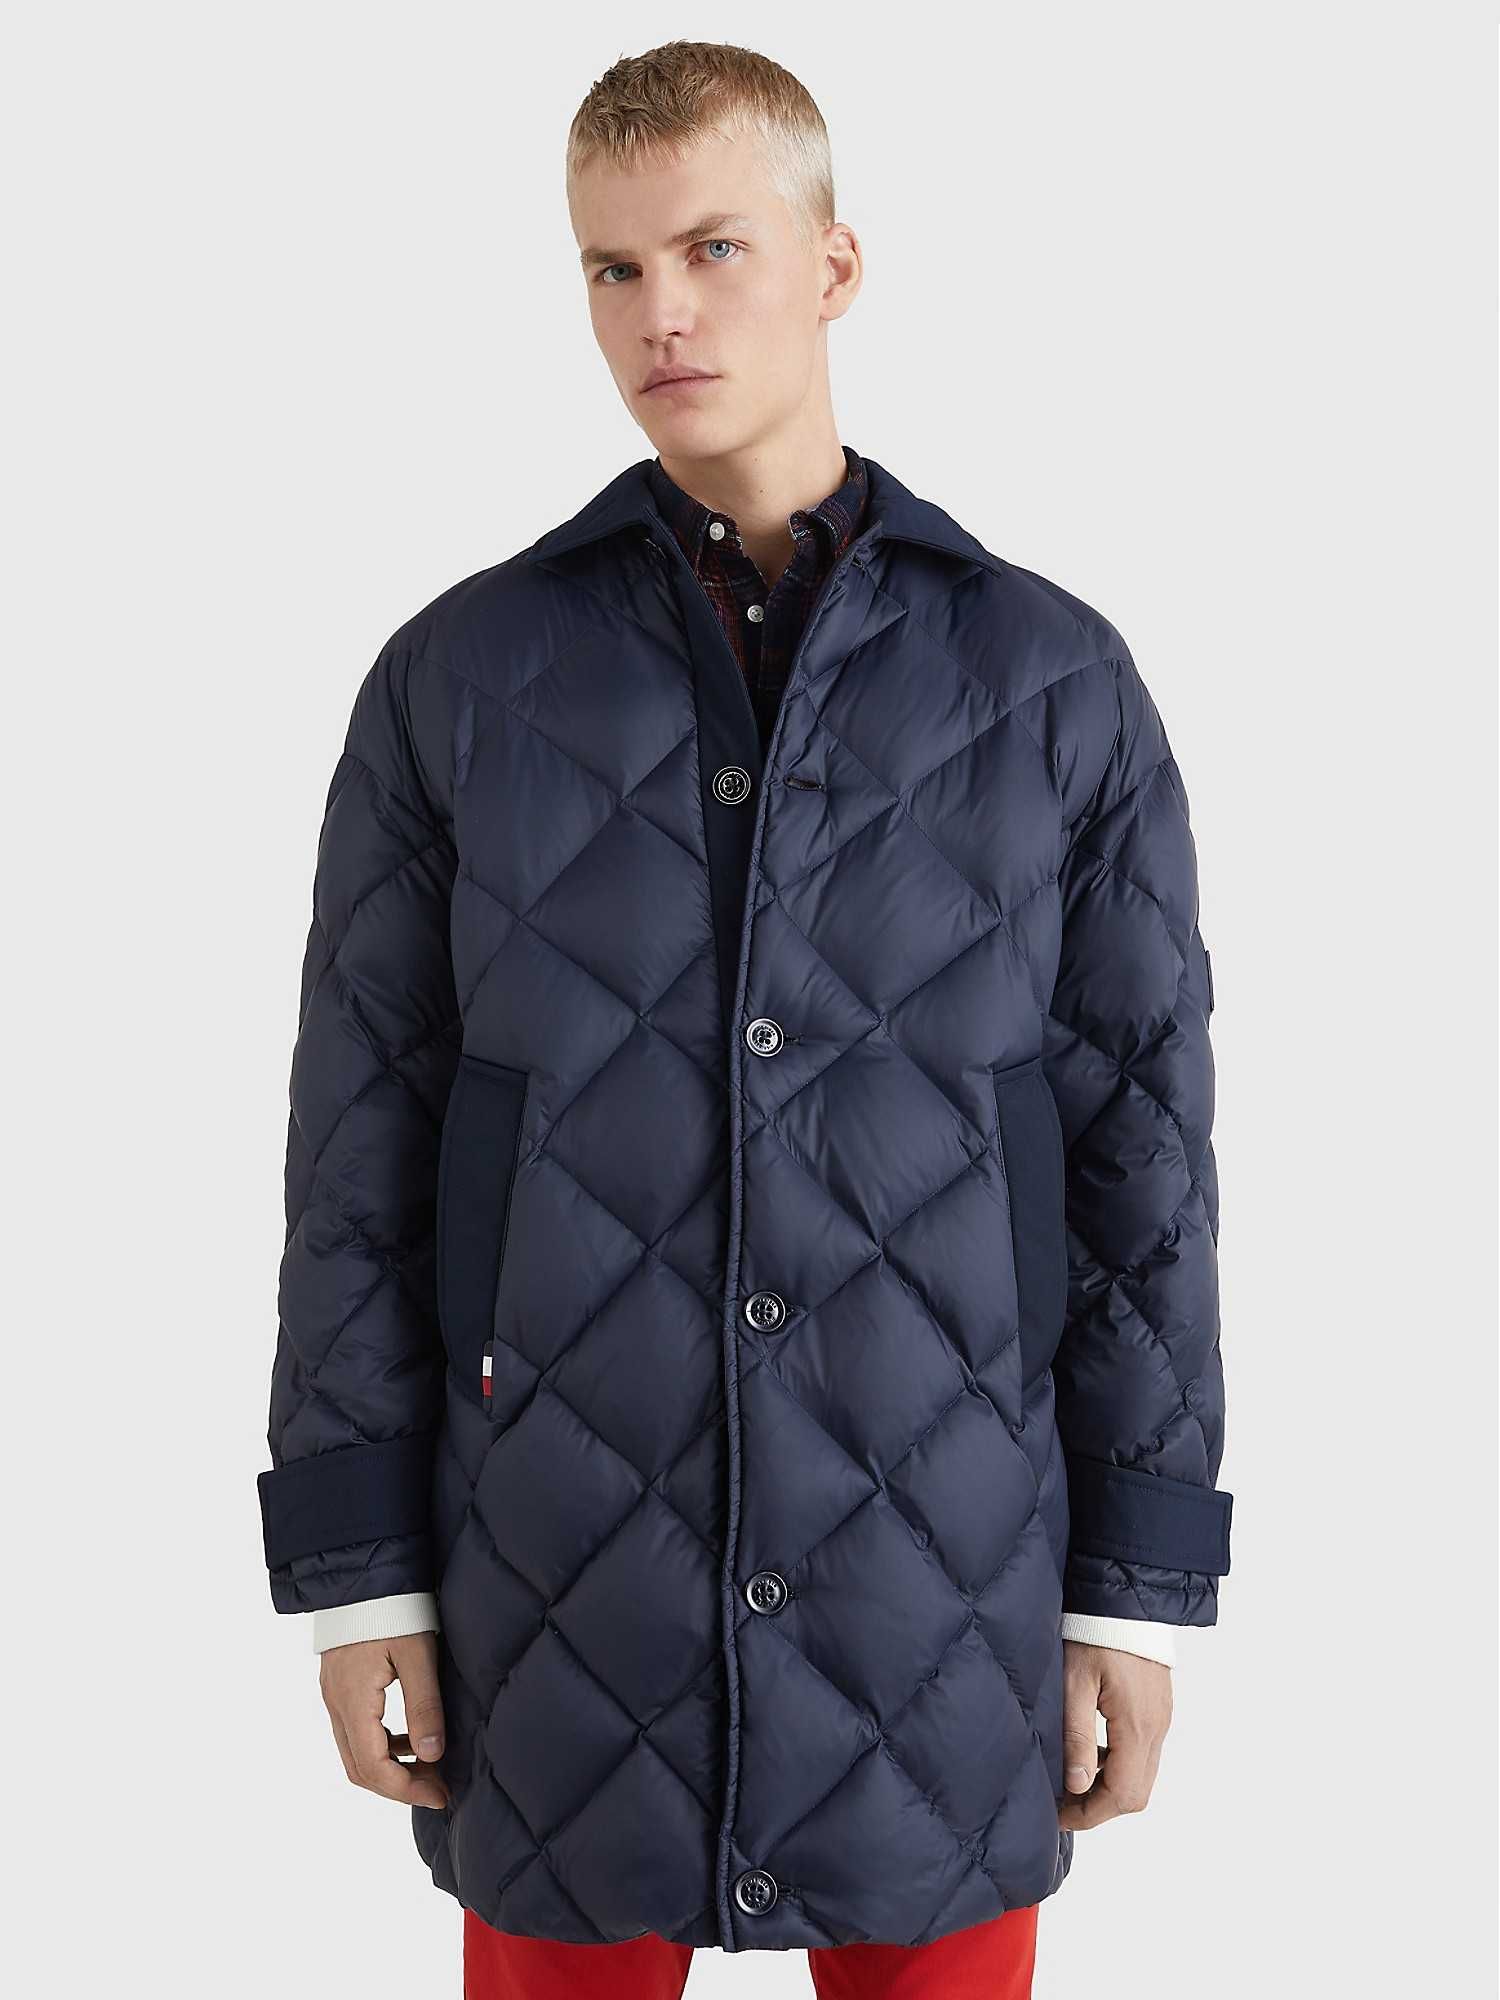 Теплое пуховое пальто куртка Tommy Hilfiger, размер ХХХЛ (56-58)